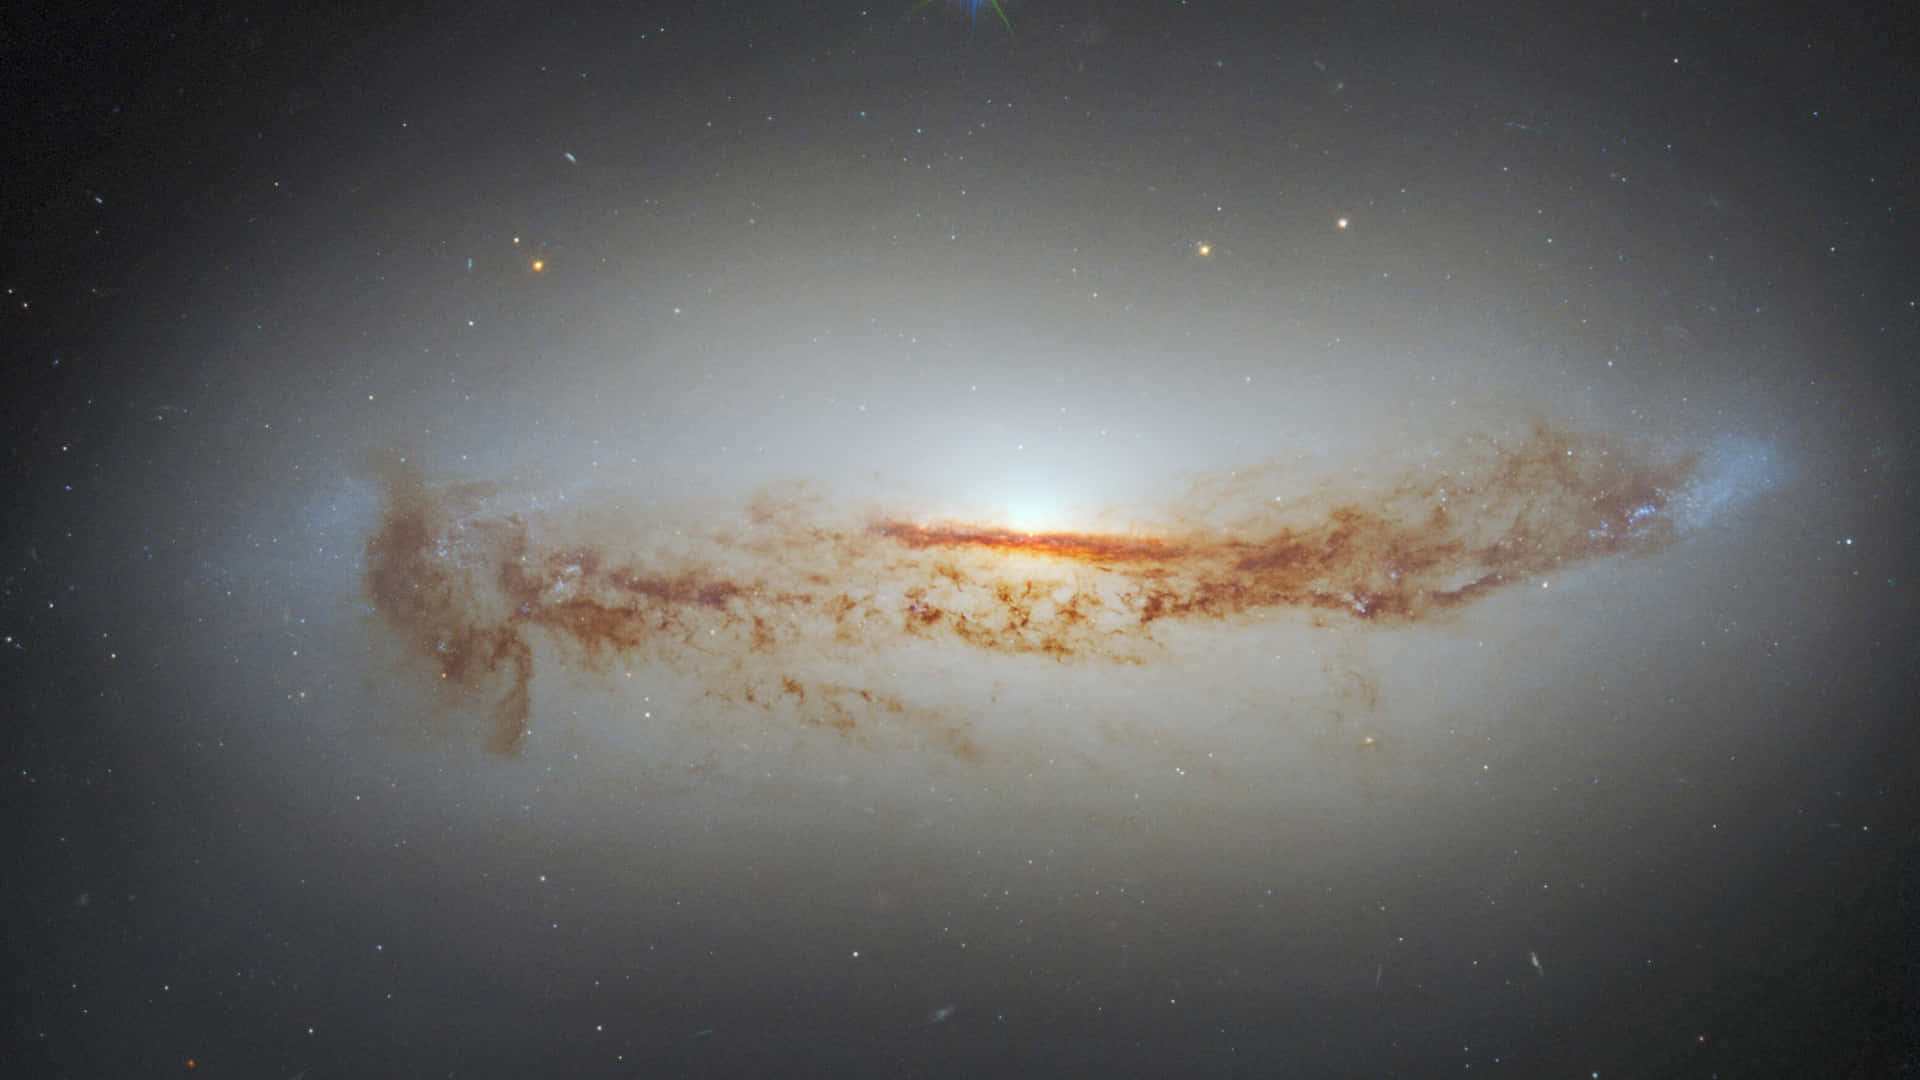 Unavista De Un Agujero Negro A 65 Millones De Años Luz De Distancia De La Tierra, Capturada Por El Telescopio Hubble.